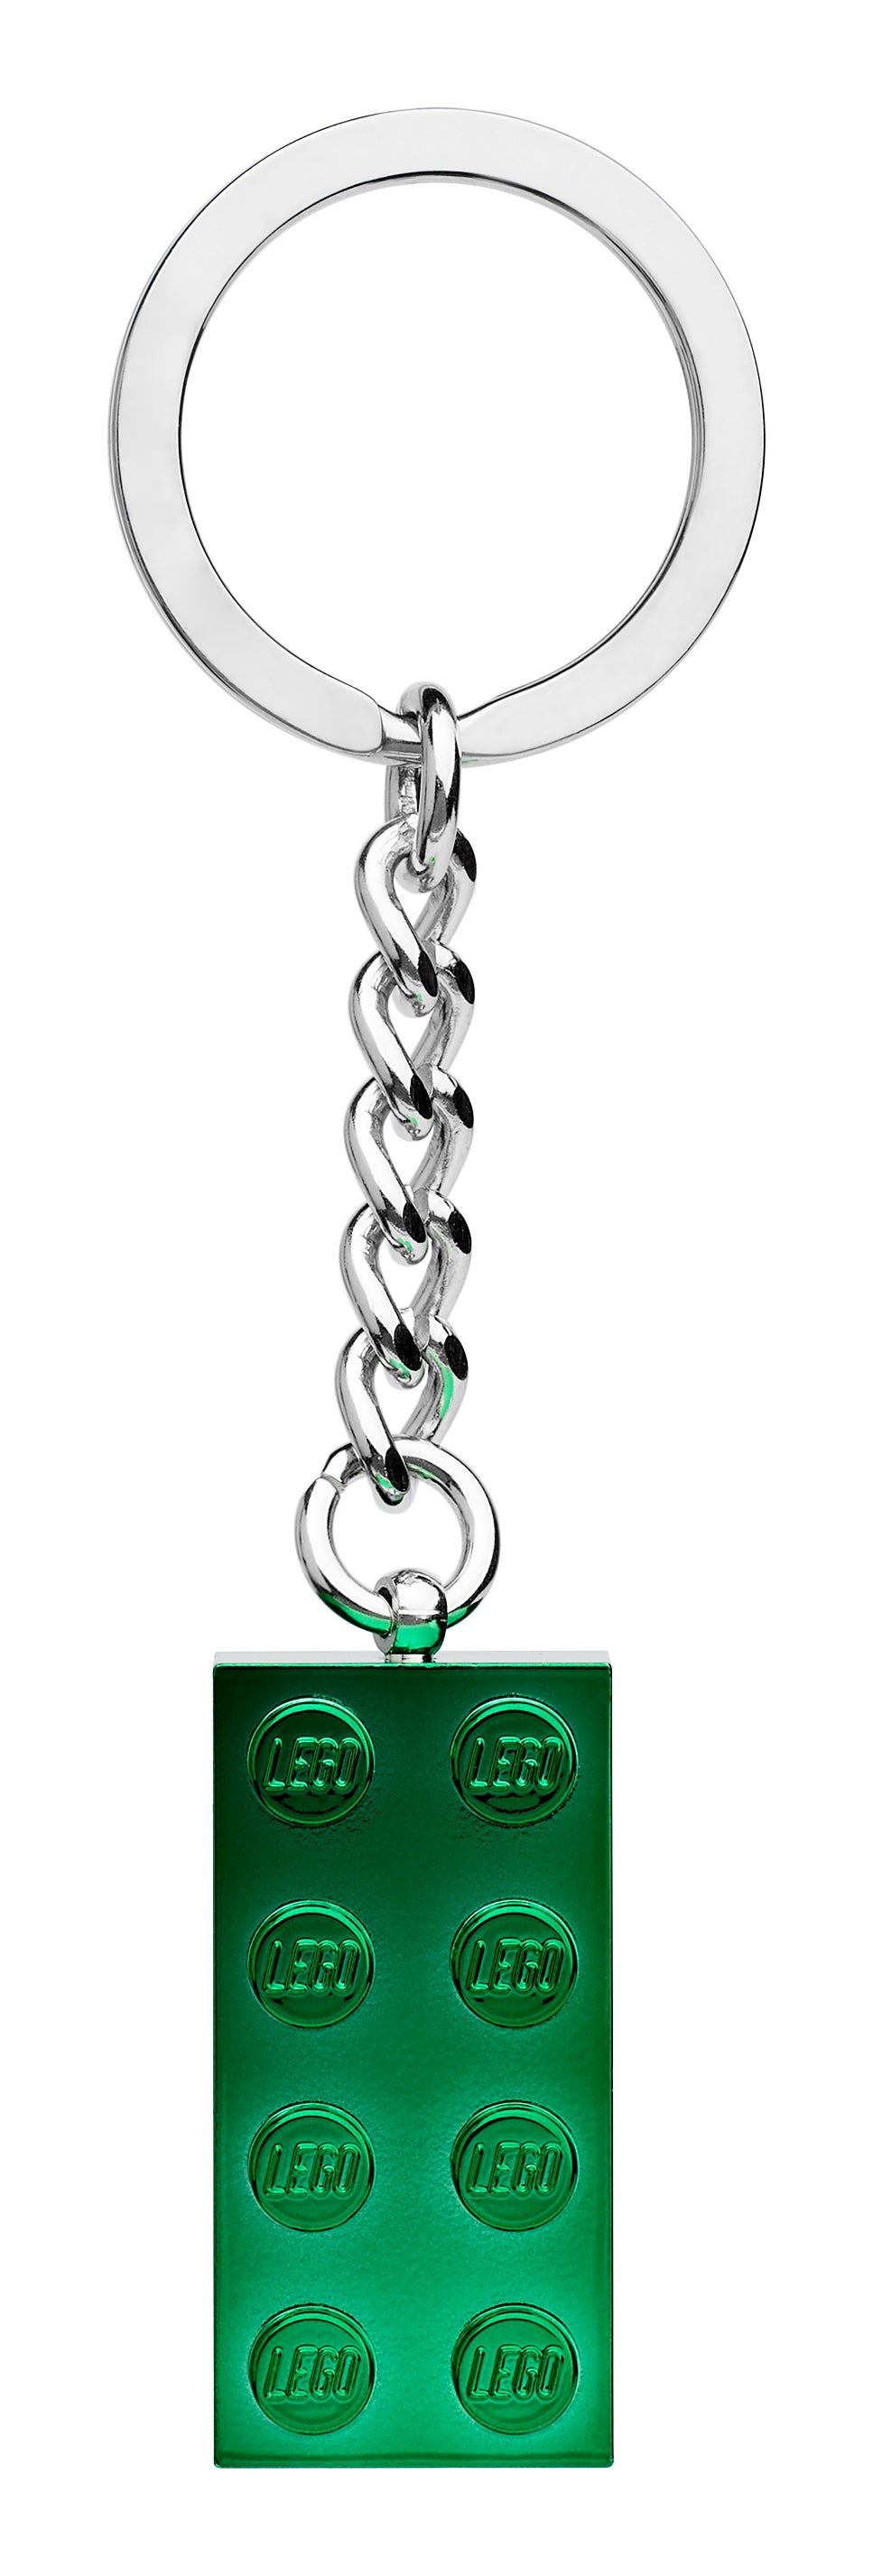 2x4 Green Metallic Keyring 854083